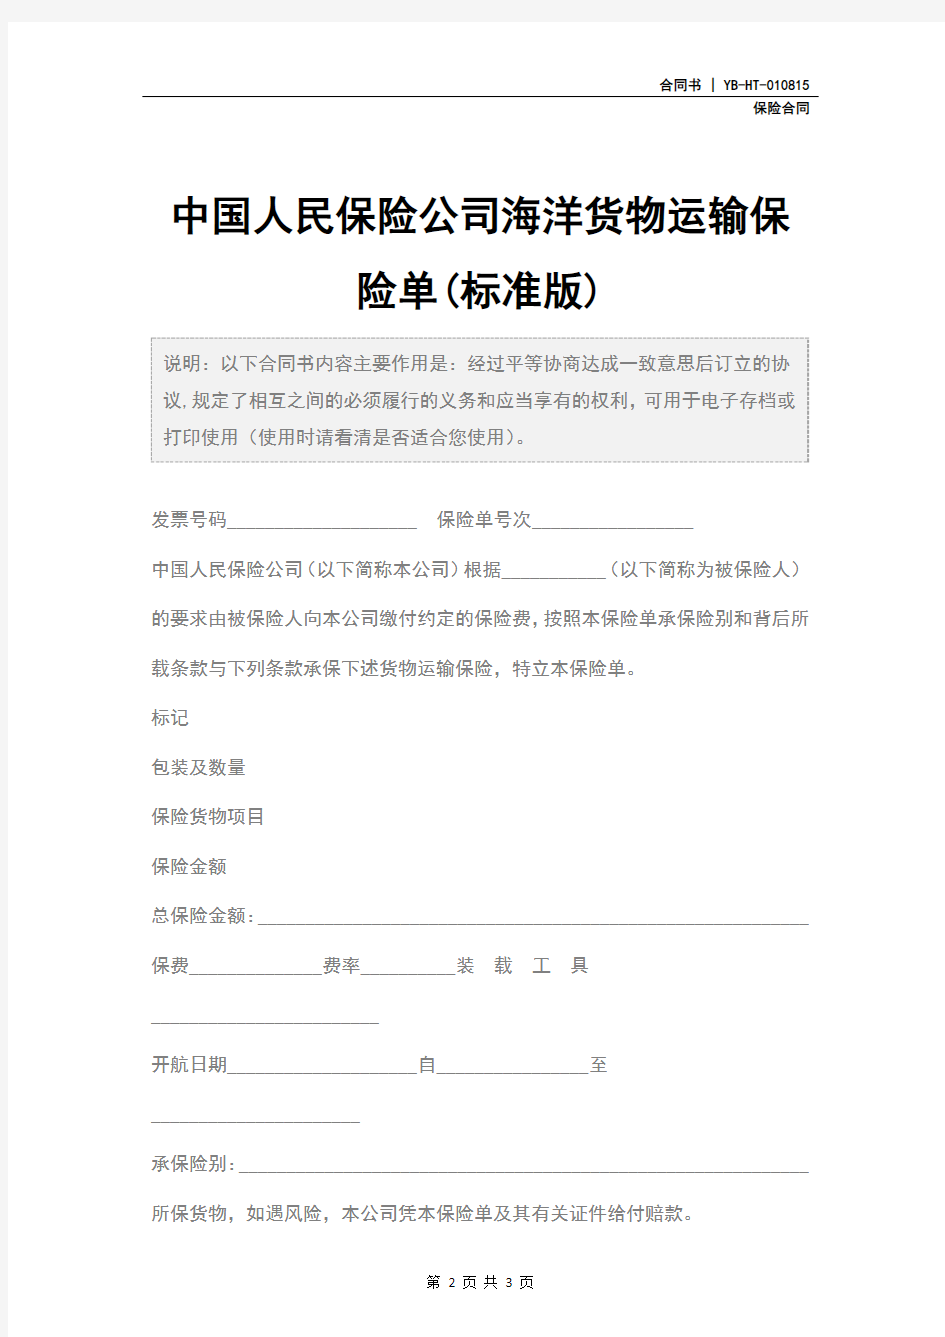 中国人民保险公司海洋货物运输保险单(标准版)